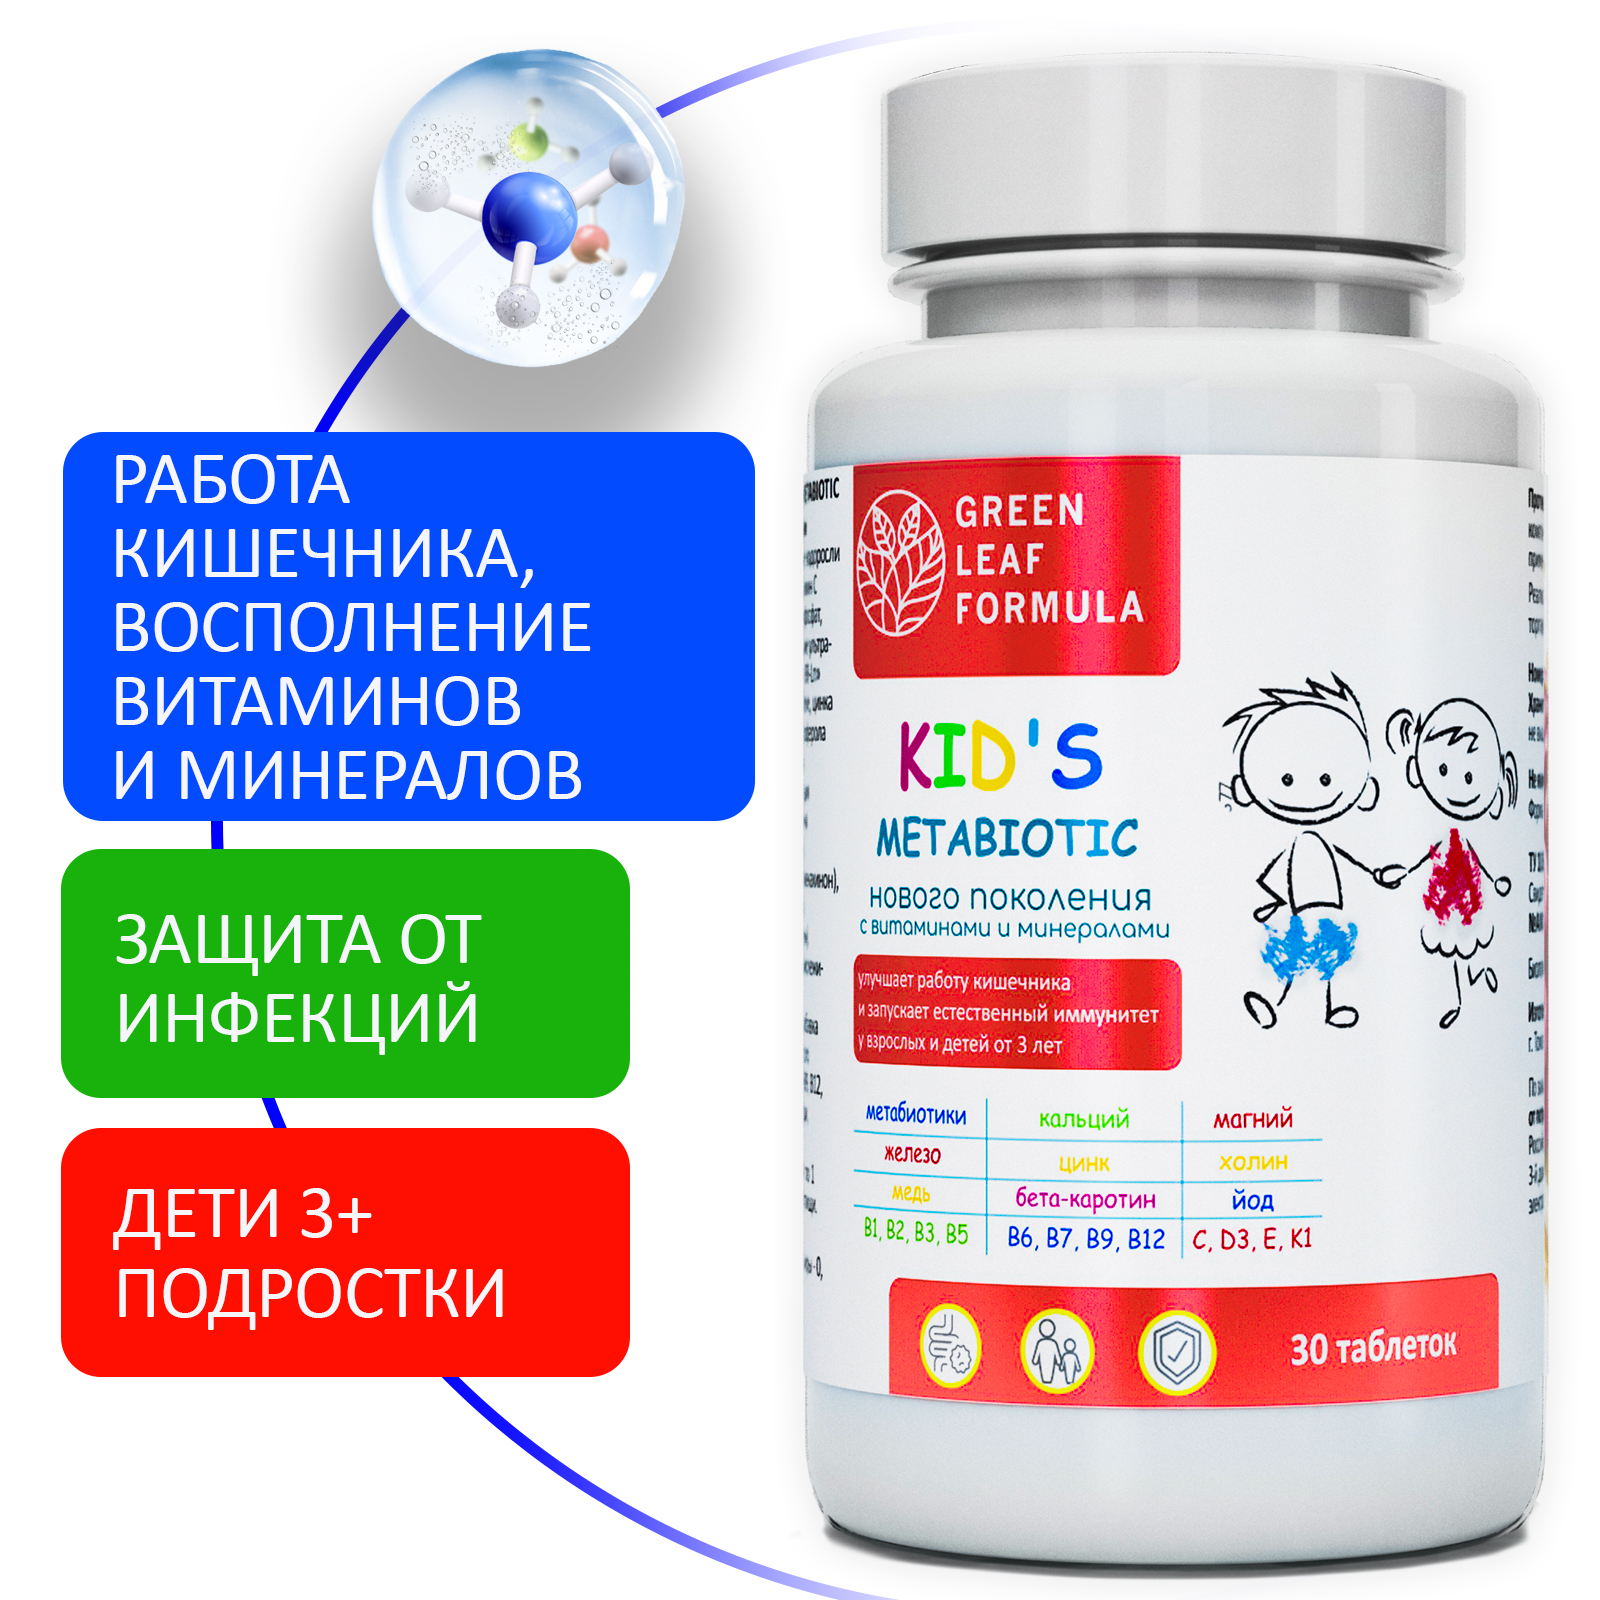 Детская омега 3 и метабиотики Green Leaf Formula для кишечника витаминный комплекс для иммунитета 120 шт - фото 9